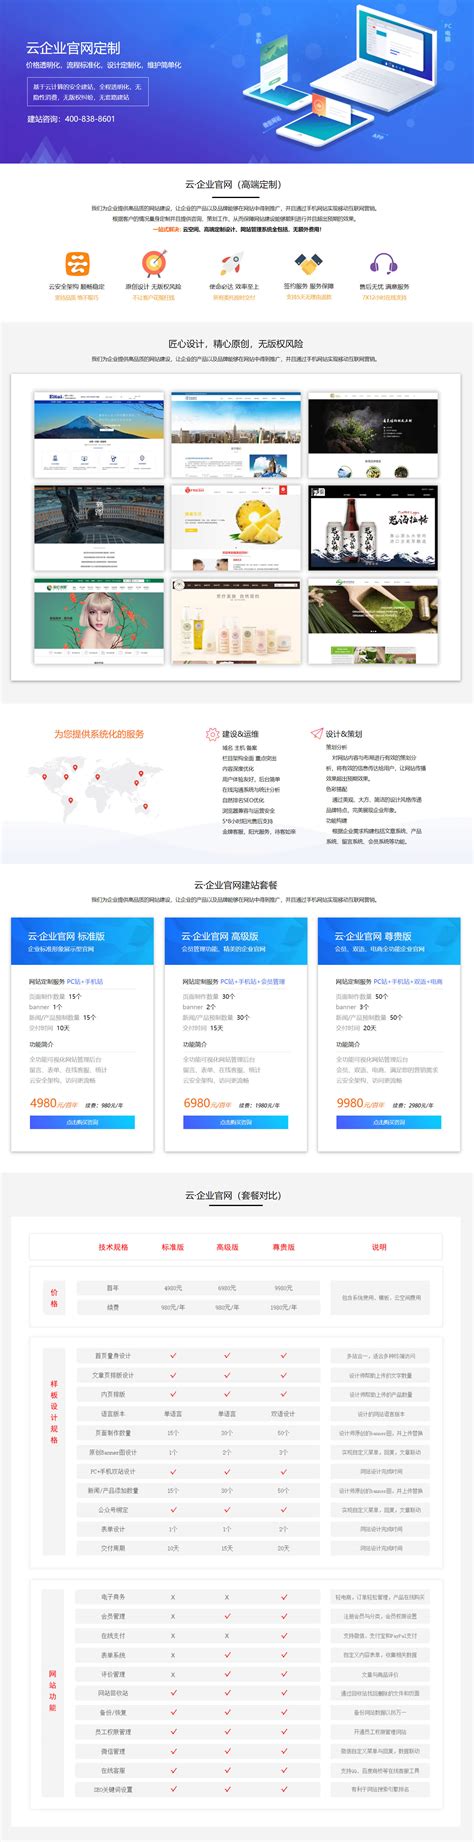 北京外贸定制网站建设方案